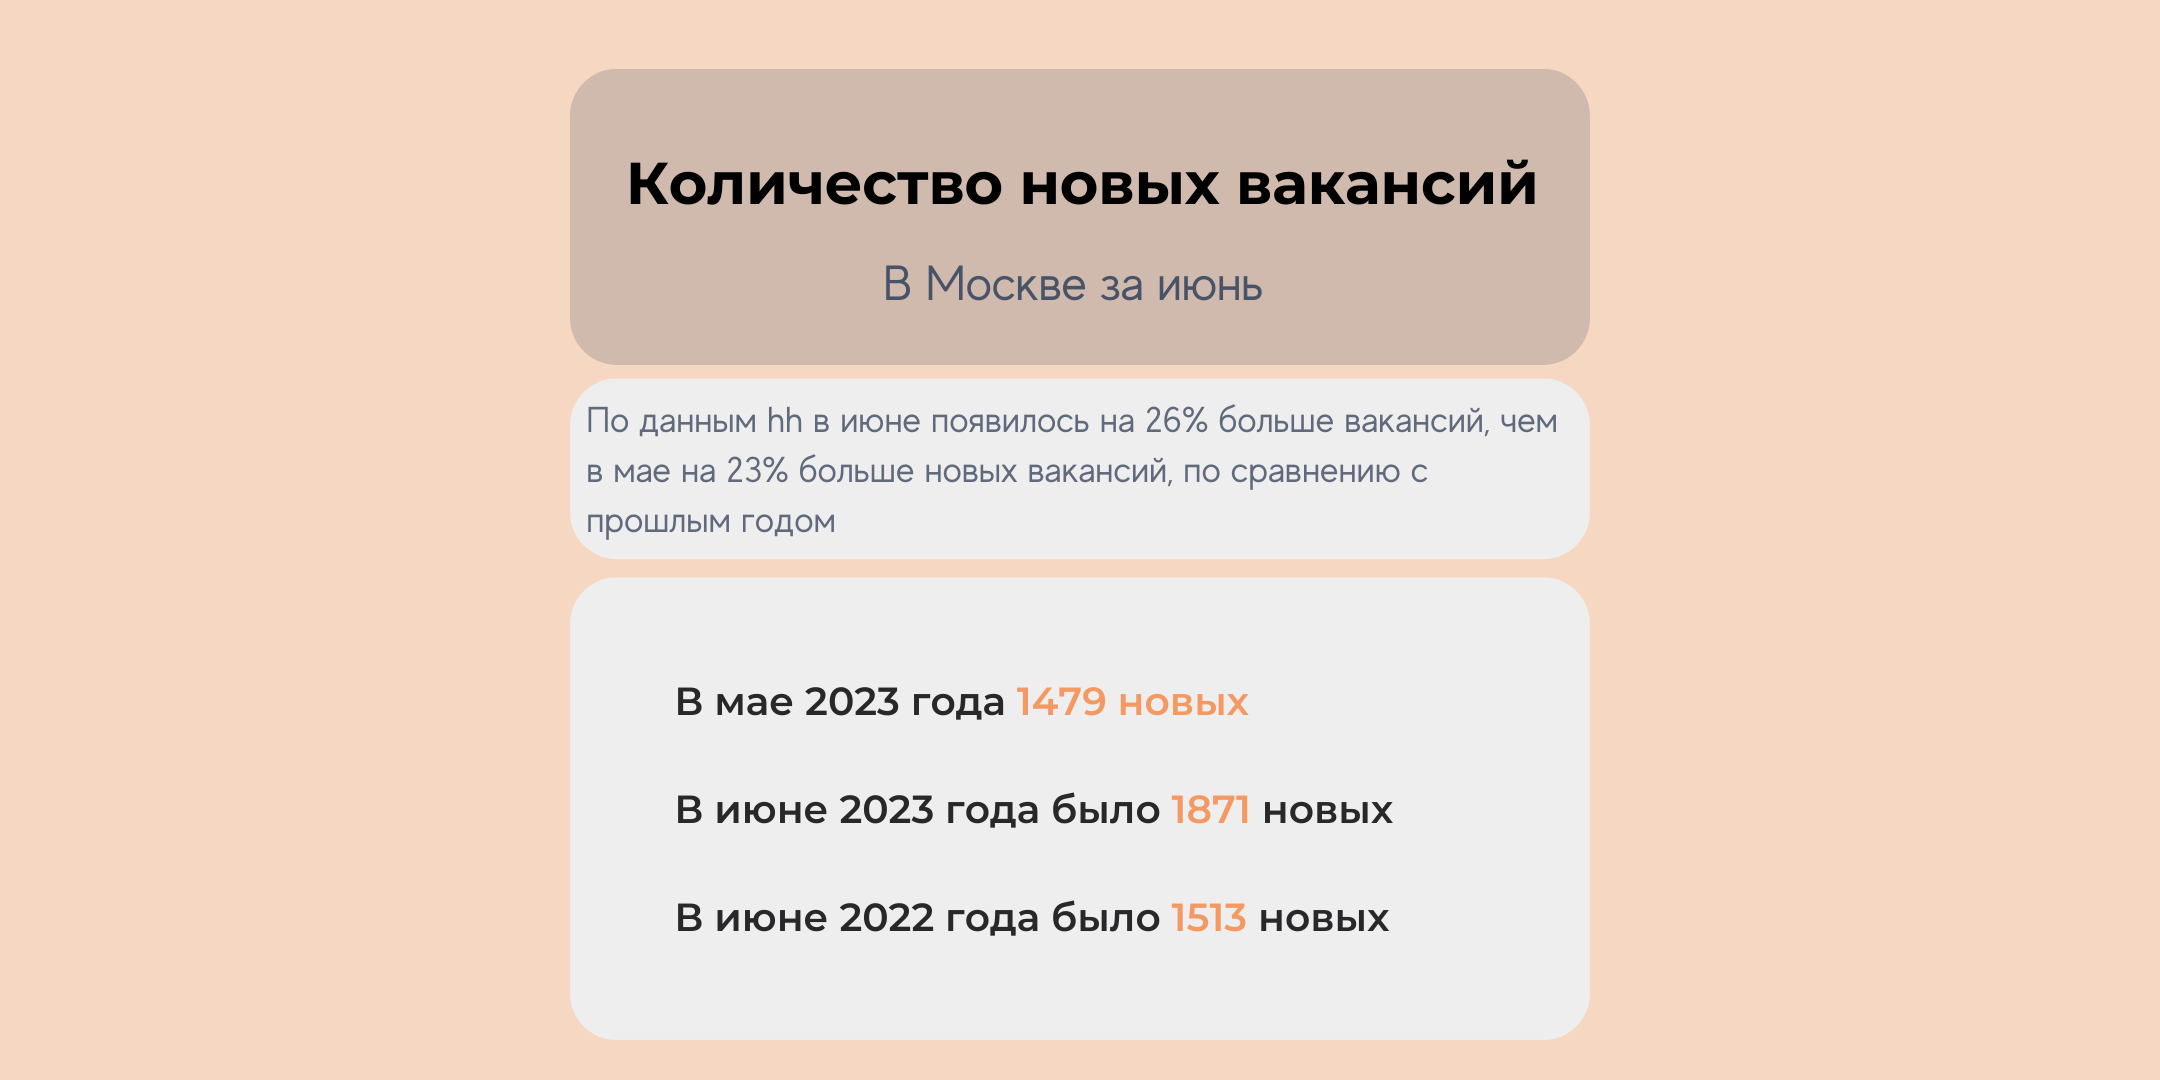 Количество новых QA вакансий в Москве в июне